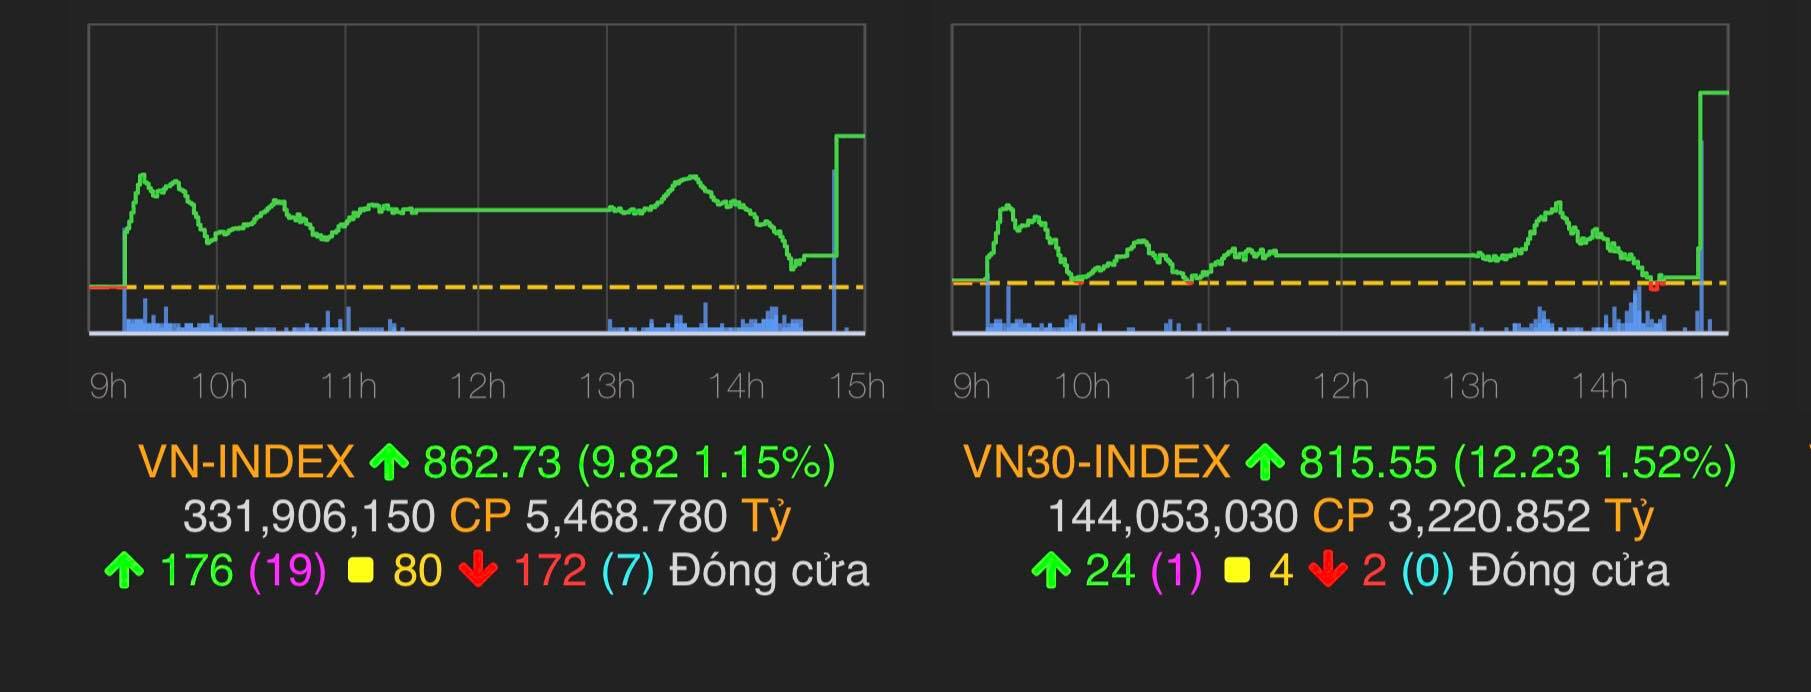 VN-Index tăng 9,82 điểm (1,15%) lên 862,73điểm.